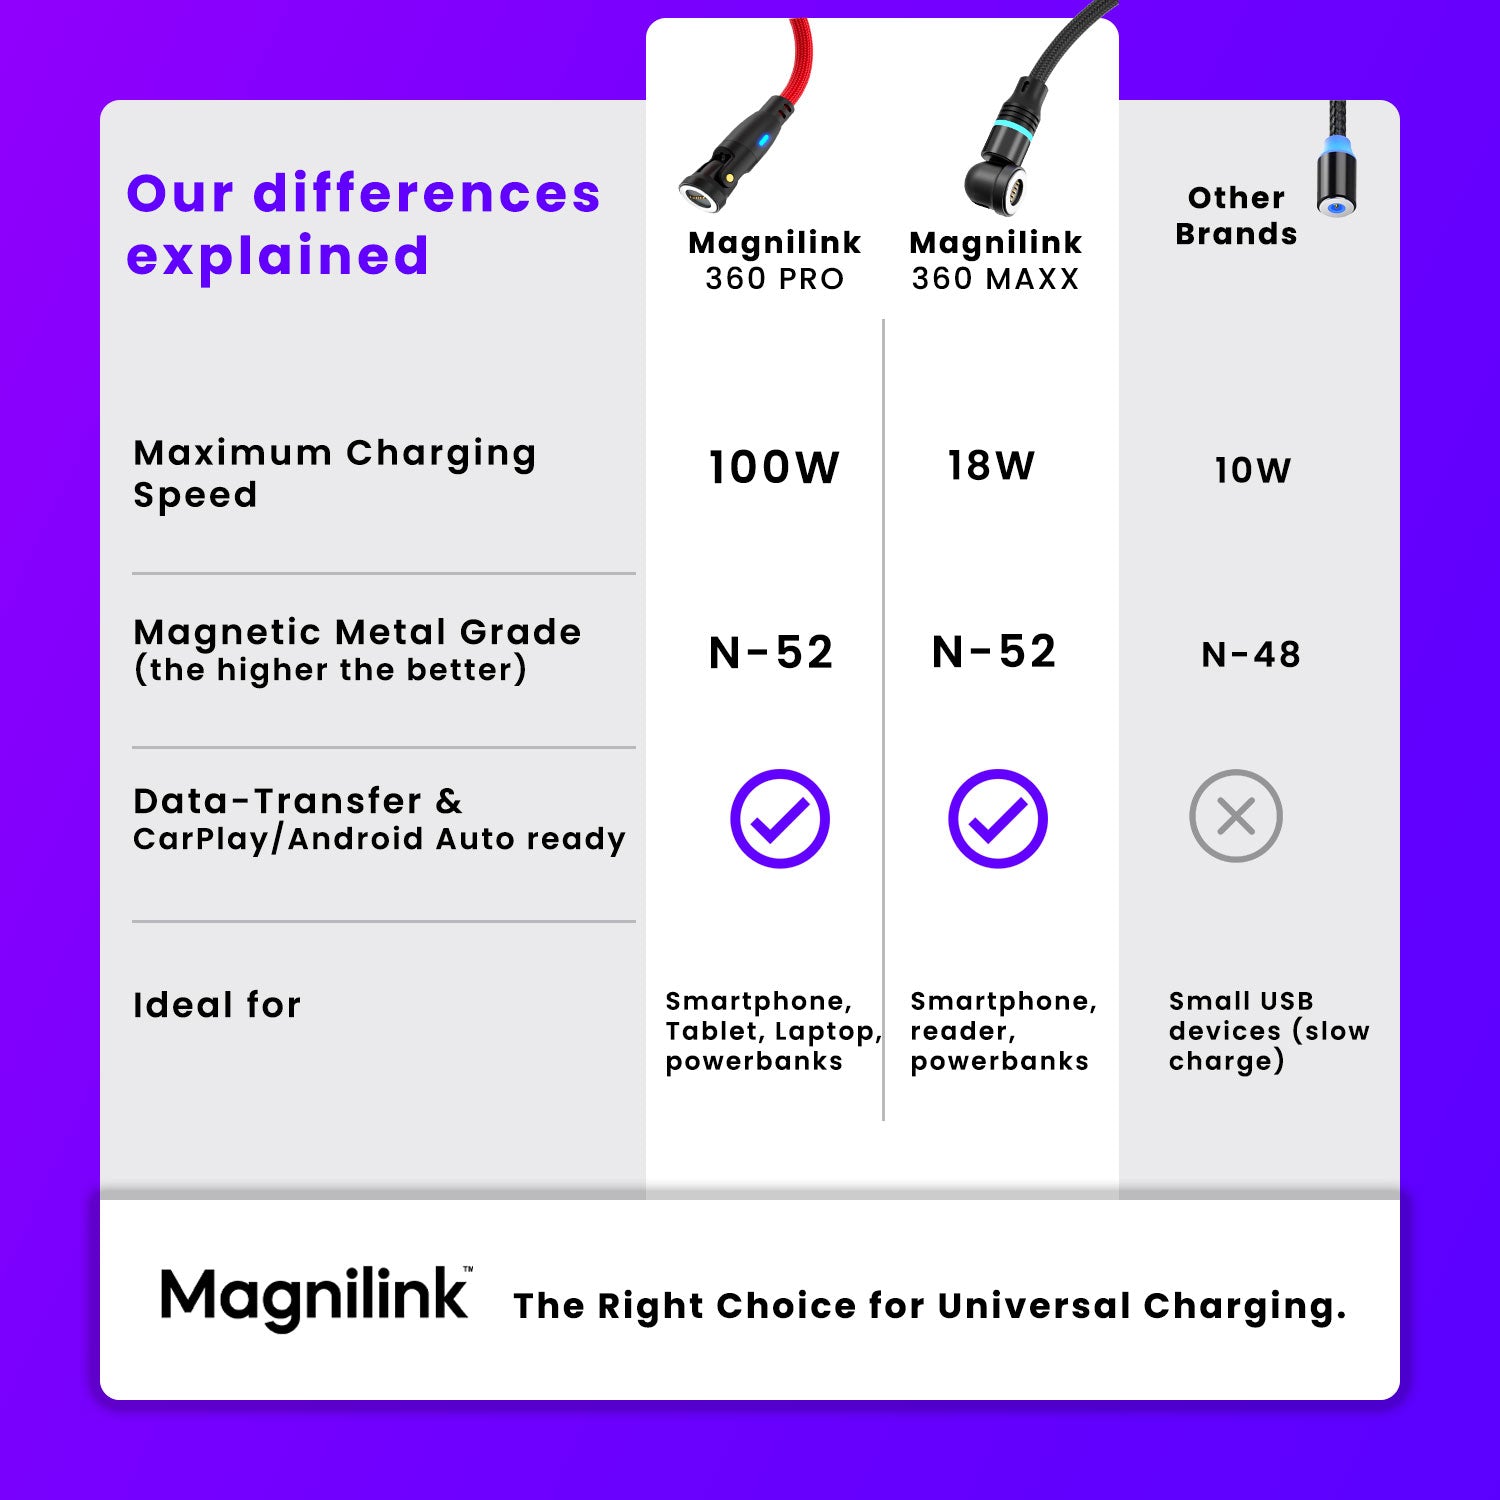 Magnilink 360 PRO - MEGA Pack (2 cables)